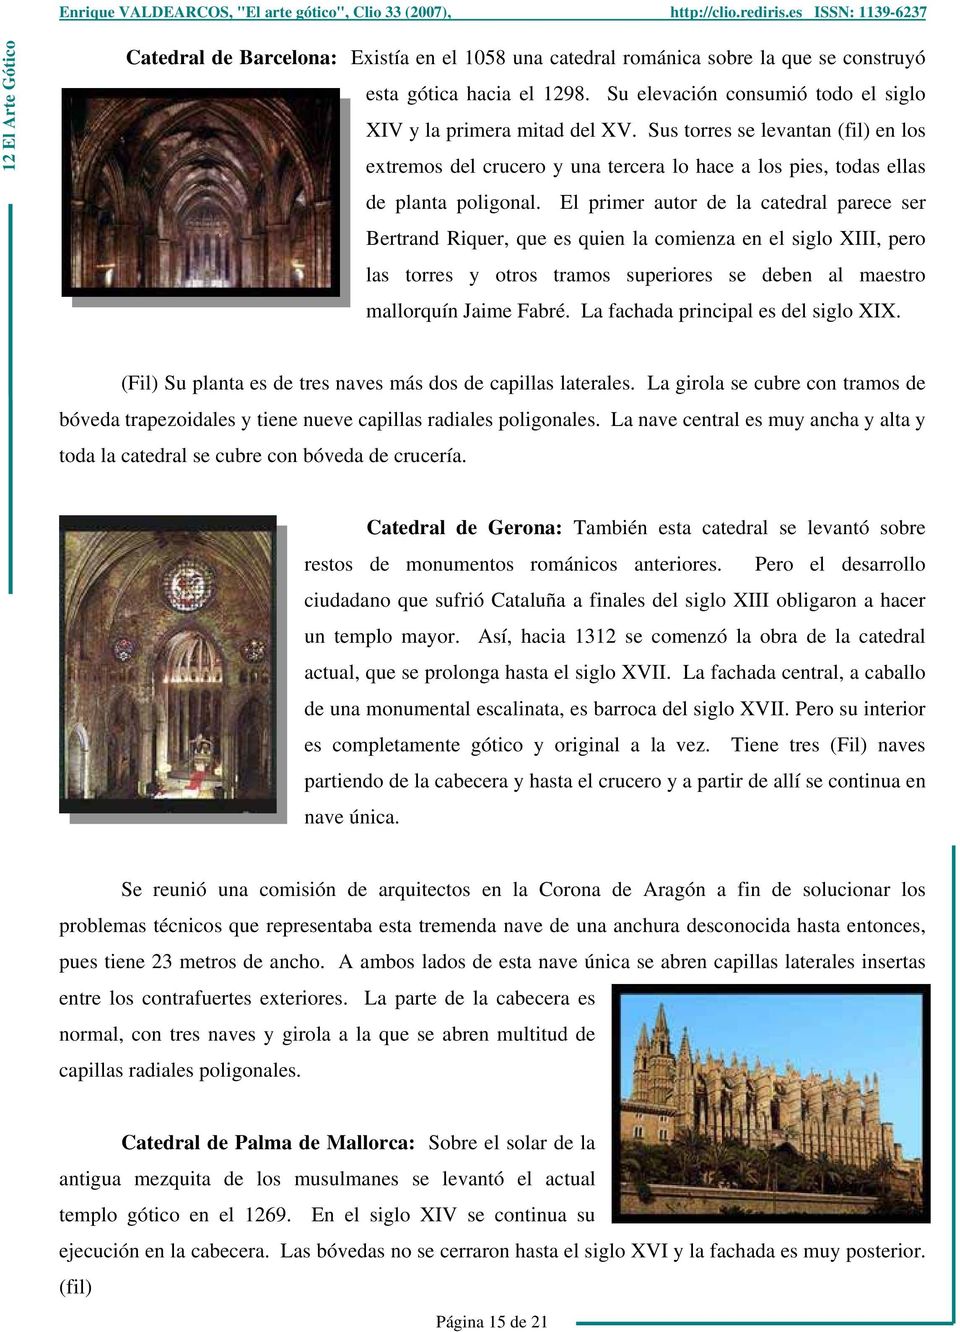 El primer autor de la catedral parece ser Bertrand Riquer, que es quien la comienza en el siglo XIII, pero las torres y otros tramos superiores se deben al maestro mallorquín Jaime Fabré.